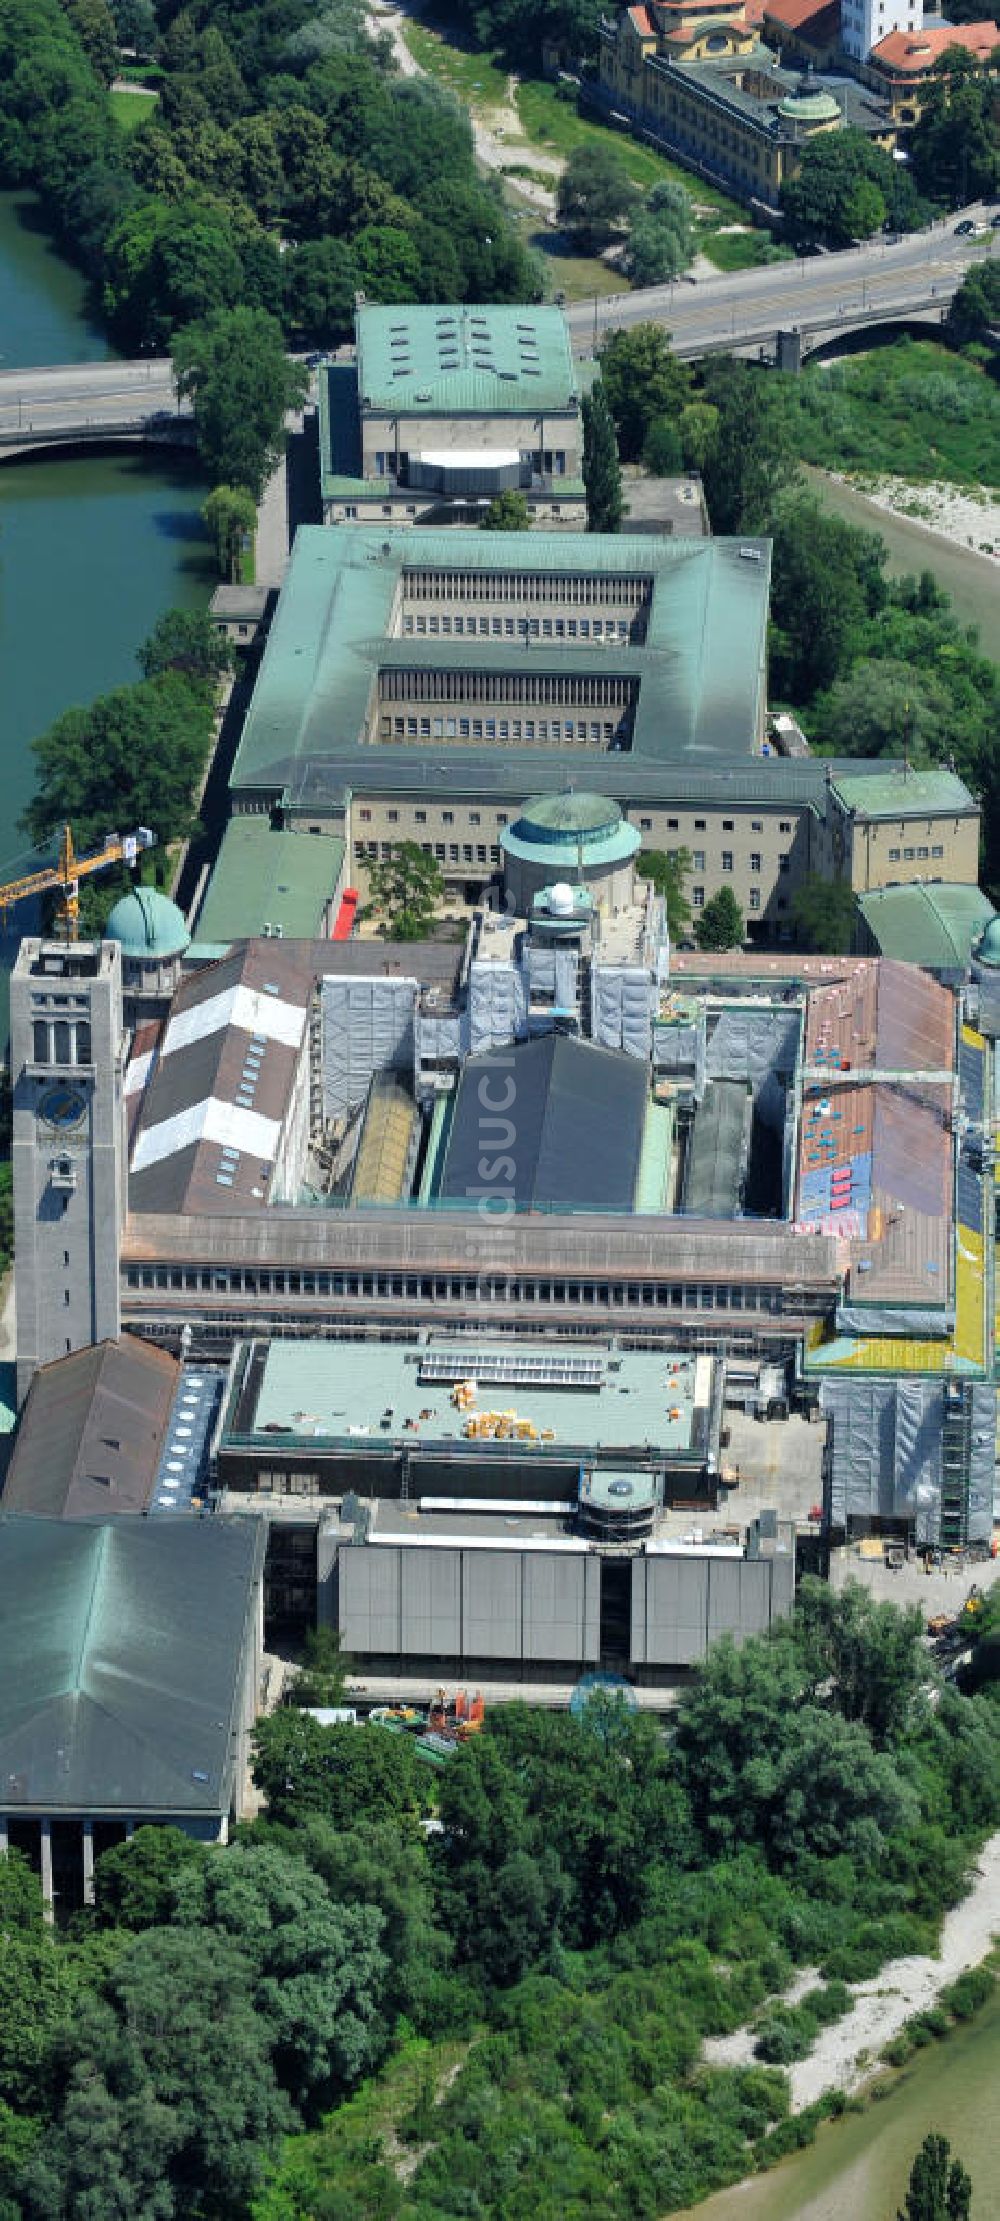 München aus der Vogelperspektive: Dachsanierung am Deutschen Museum auf der Museumsinsel an der Isar in München